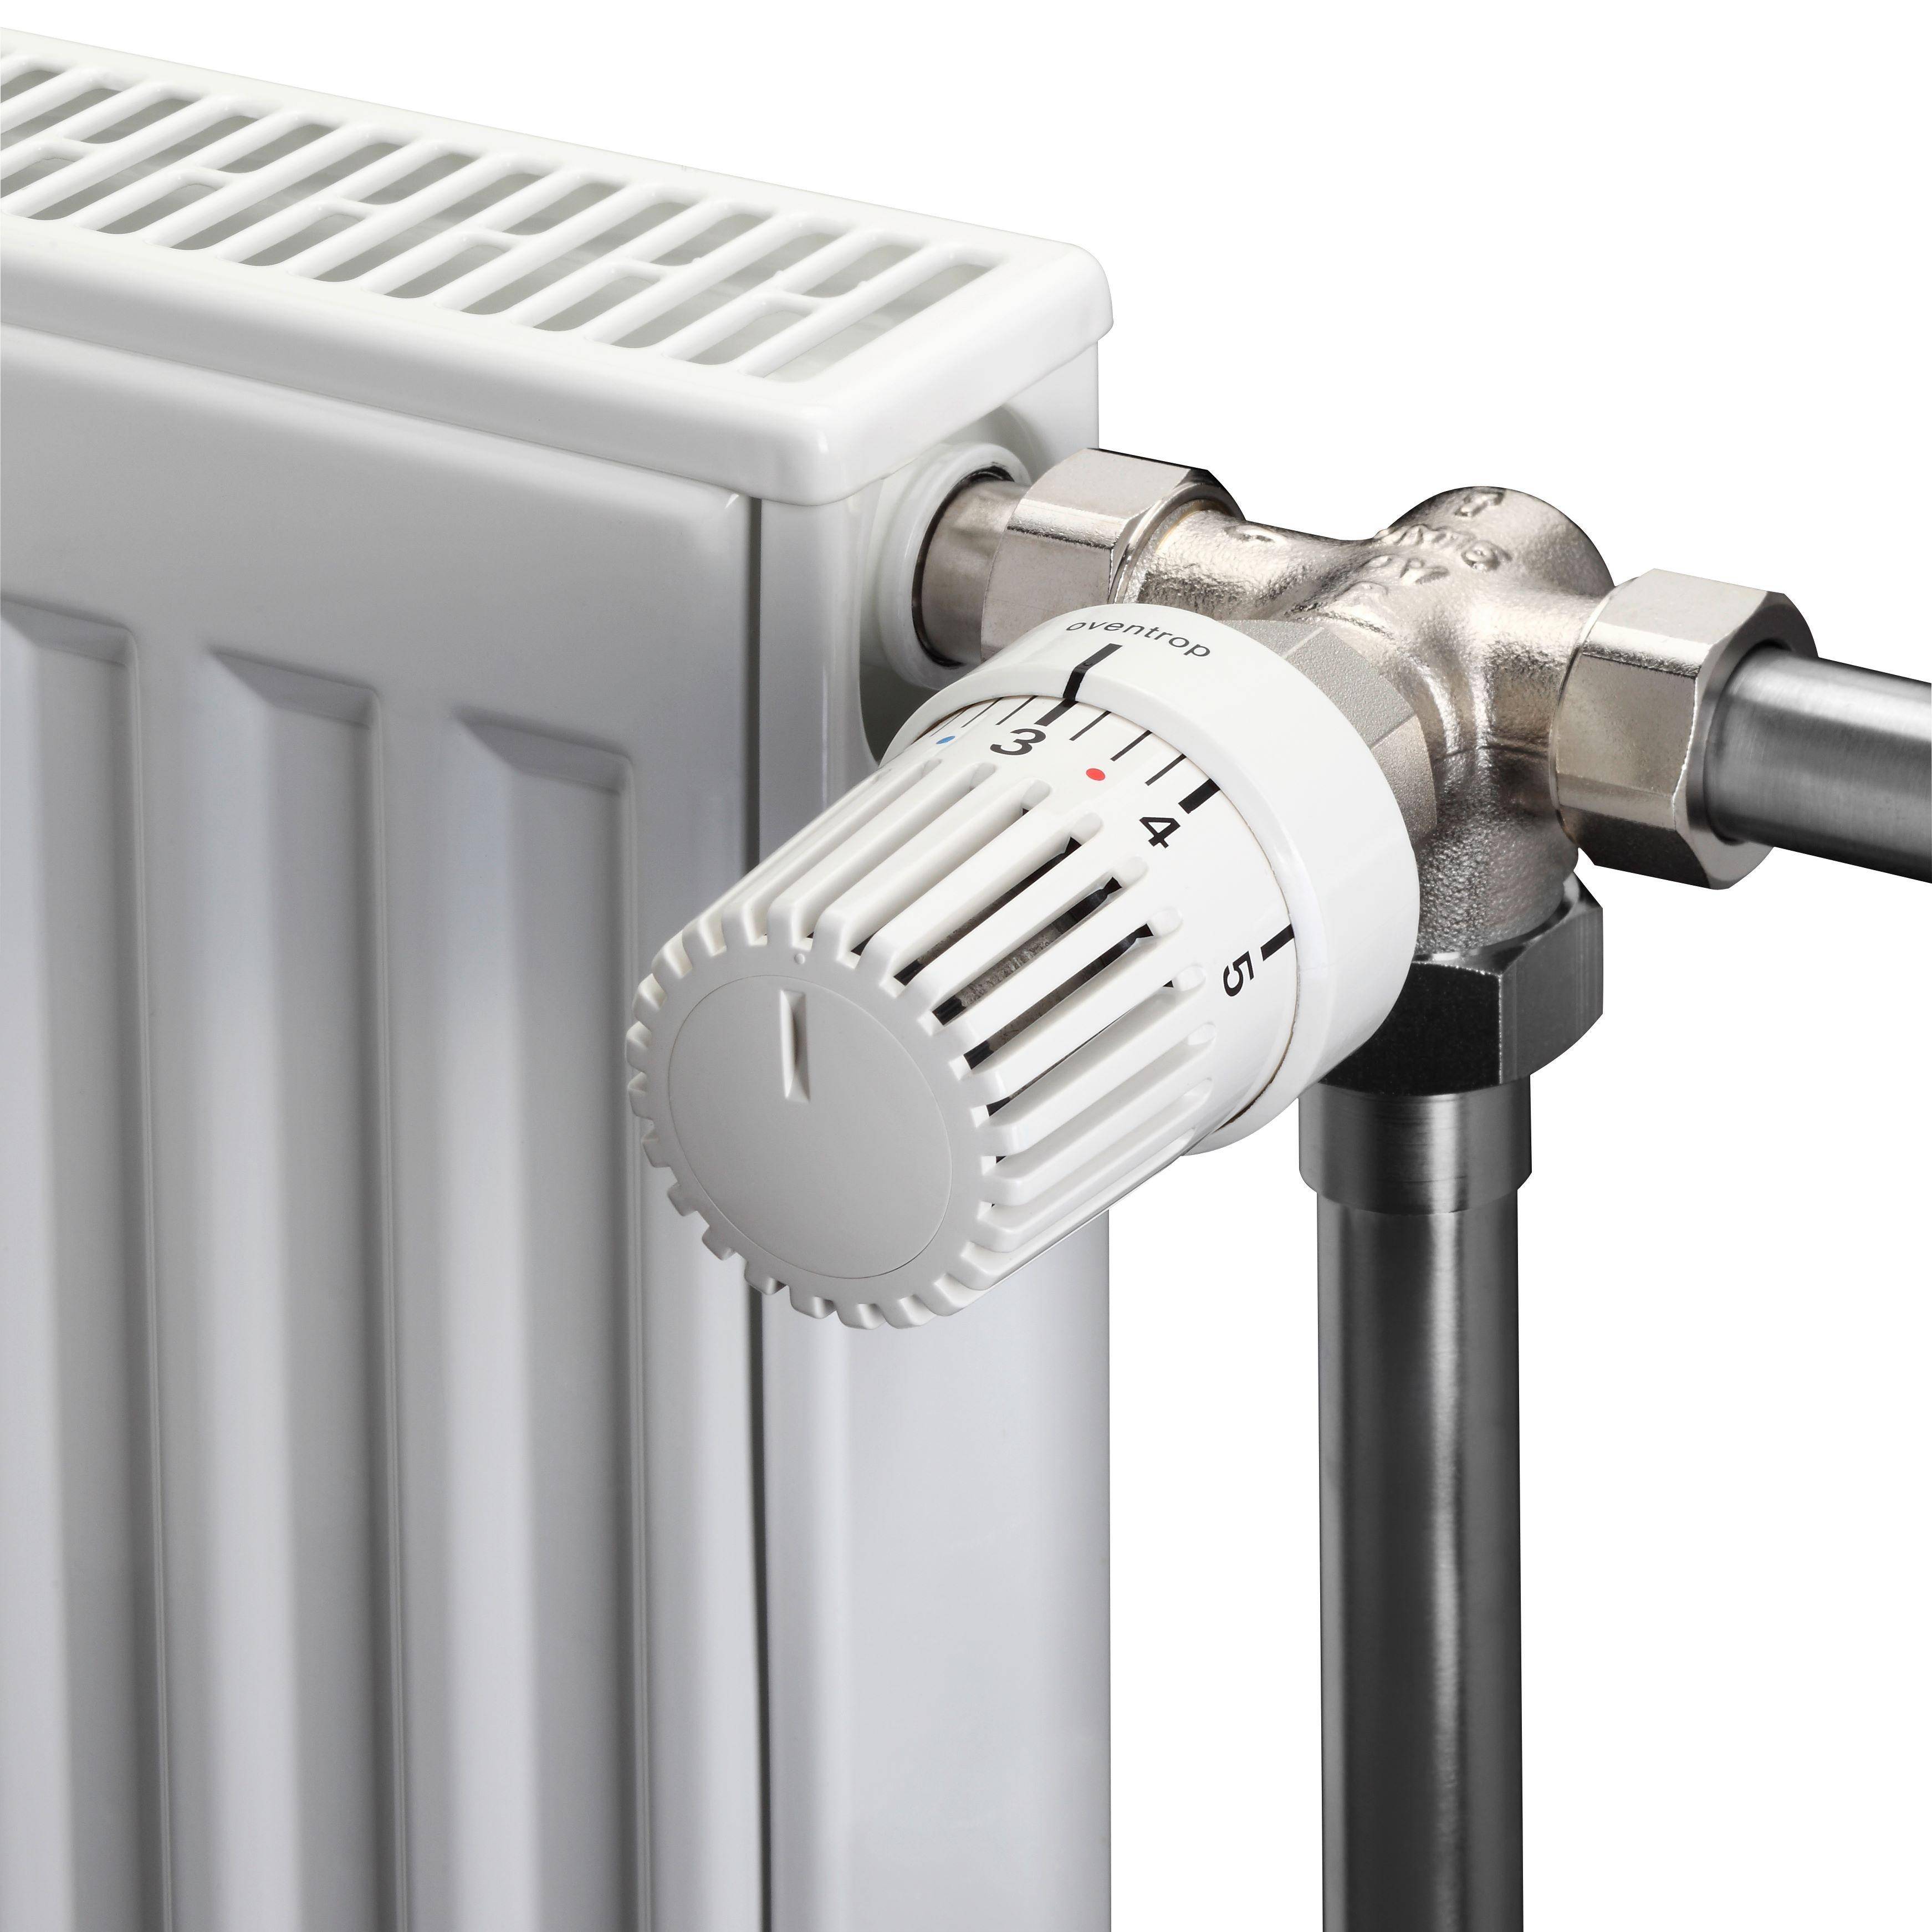 Регулятор температуры для радиатора отопления: ручной, термо-механический и электронный, правила установки и настройки